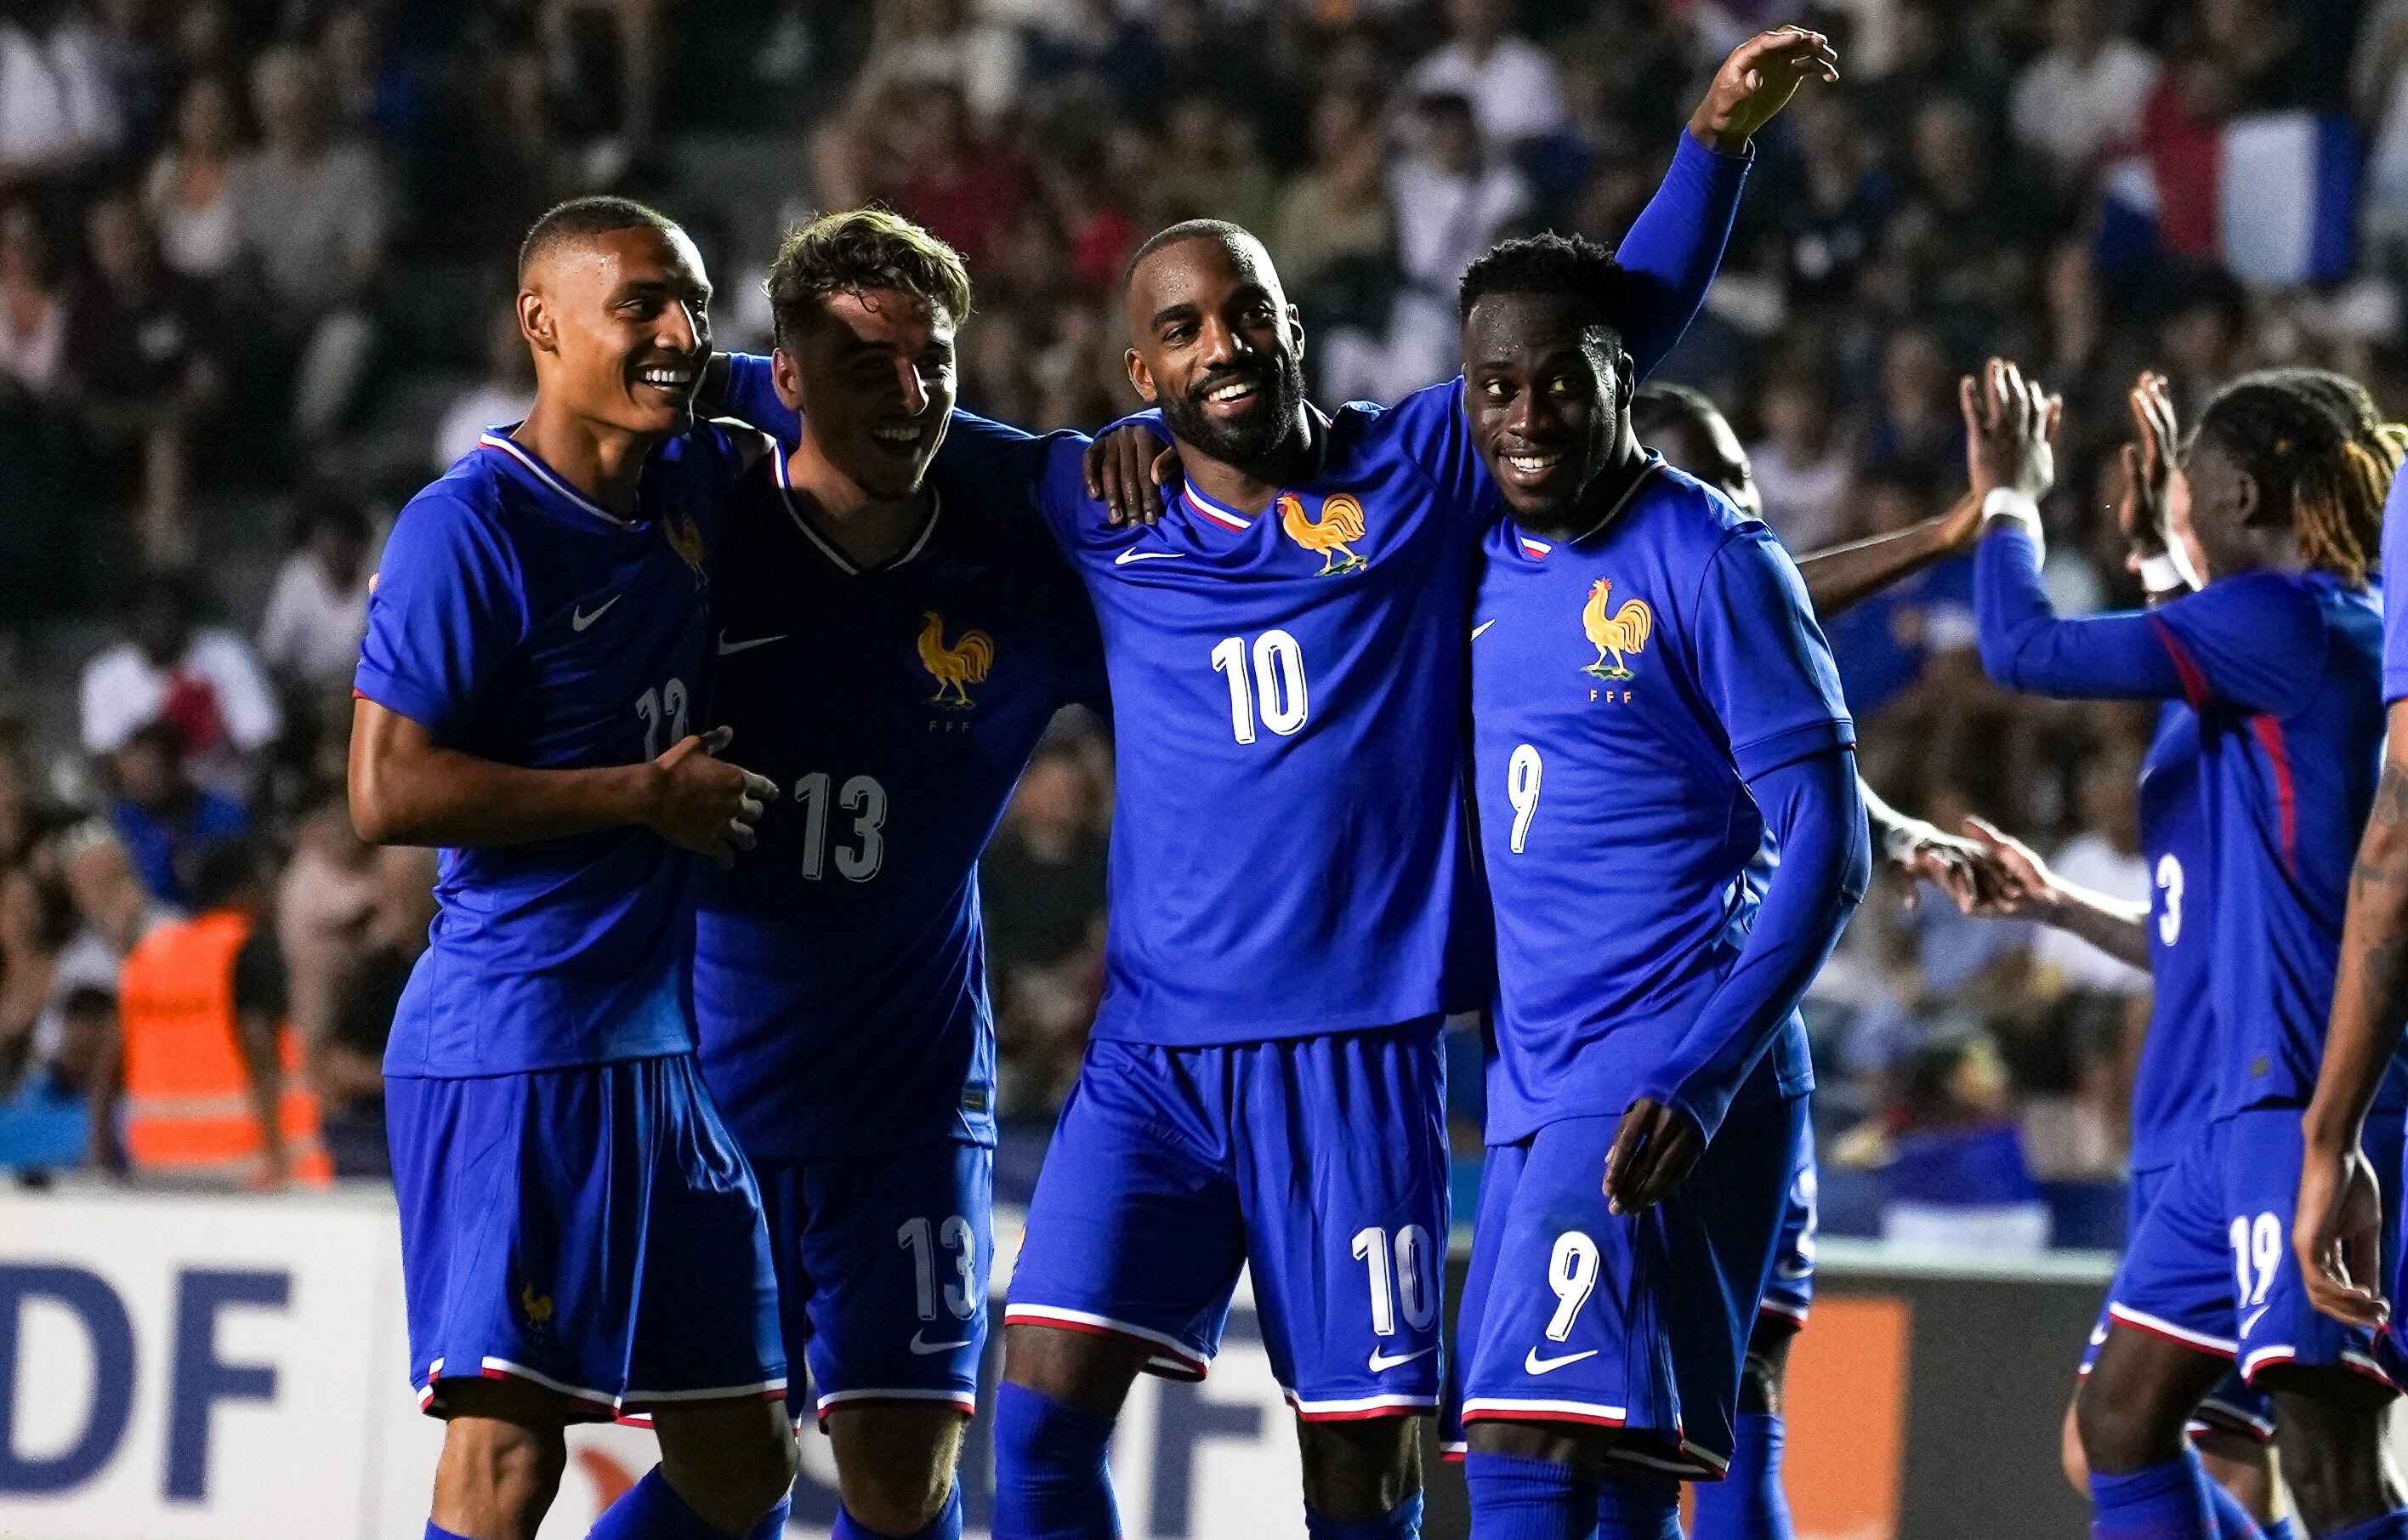     JO 2024 : débuts réussis pour les équipes de France avec des Antillais décisifs

